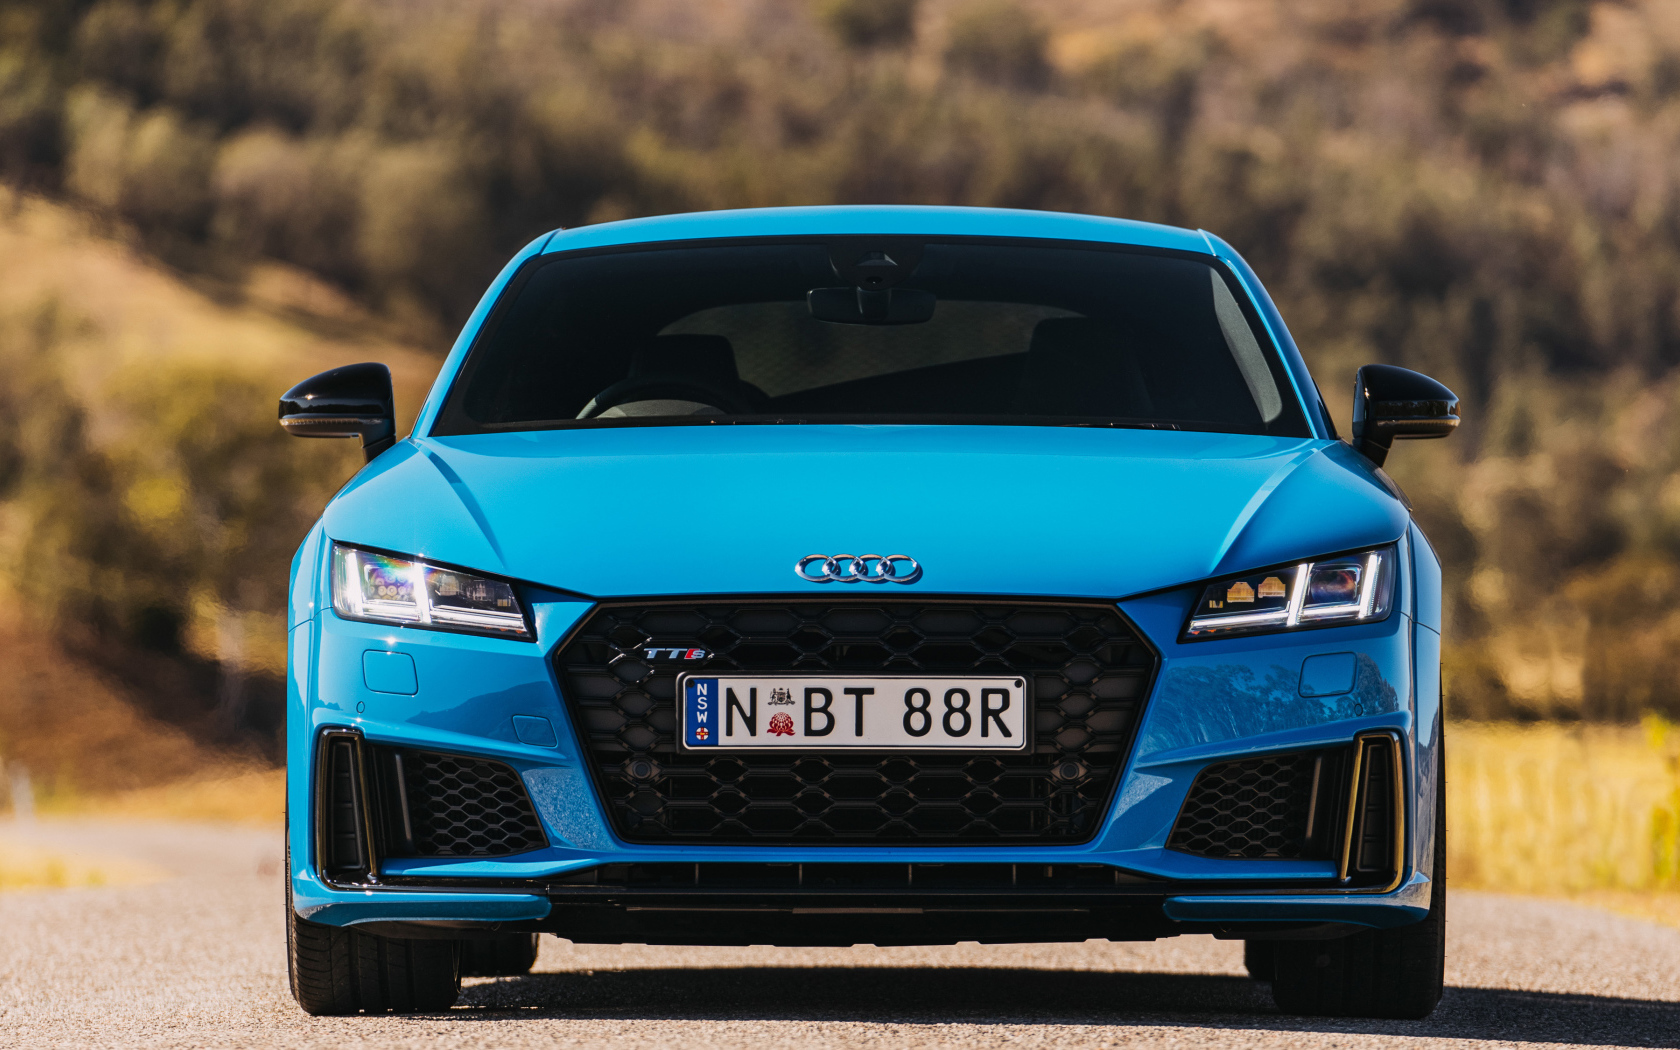 Blue 2019 Audi TTS Coupe car front view